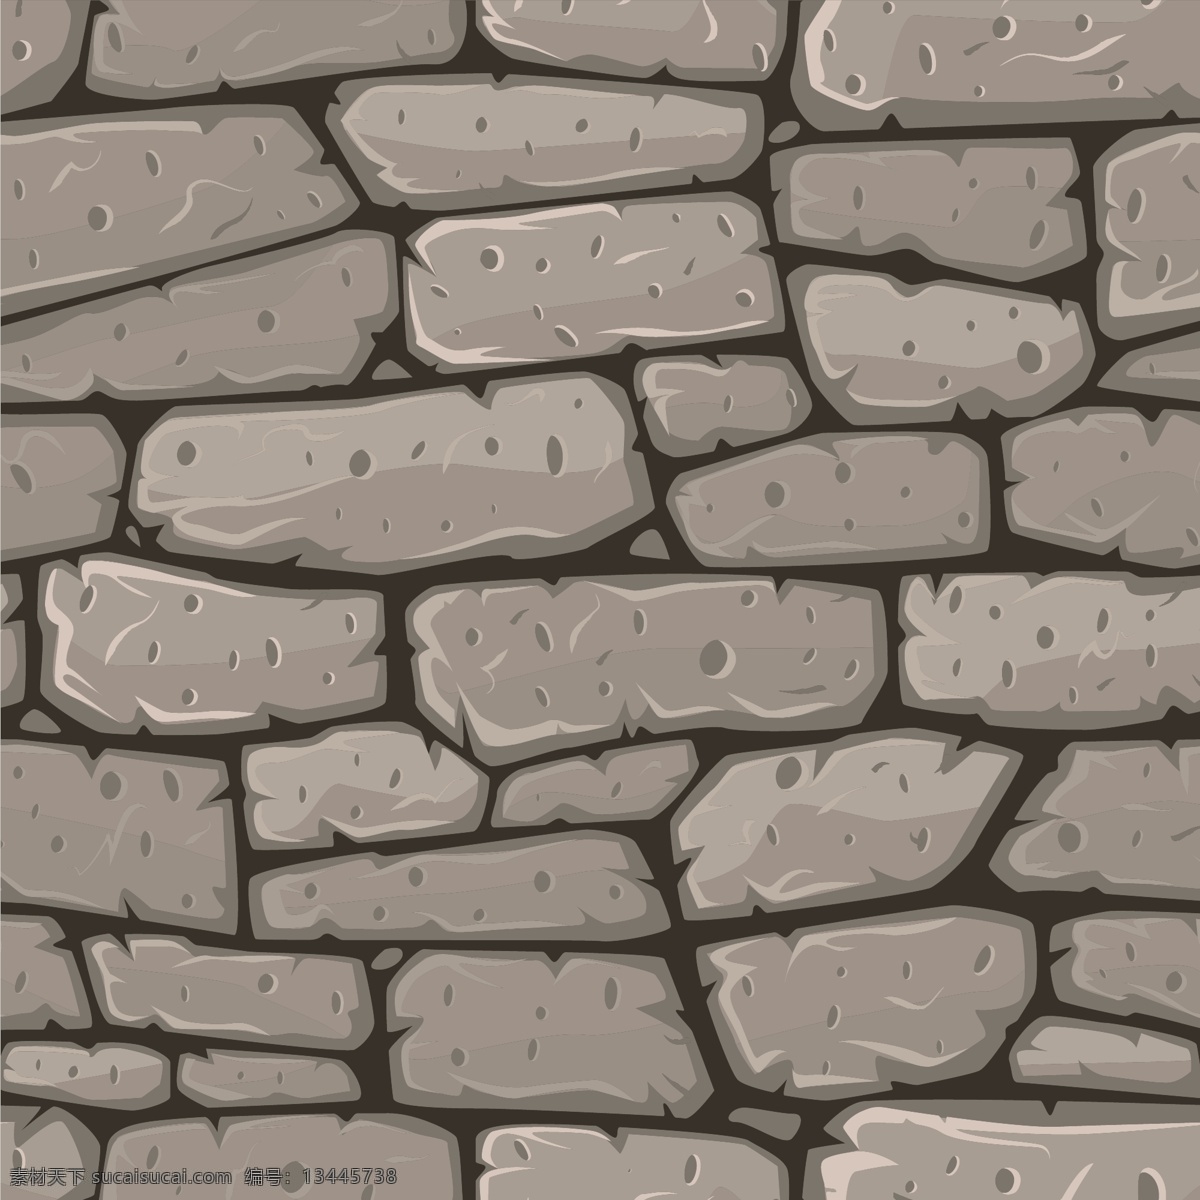 石墙背景 墙壁 砖墙 石头墙 石头 纹理 墙面 背景 背景墙 设计素材 底纹边框 抽象底纹